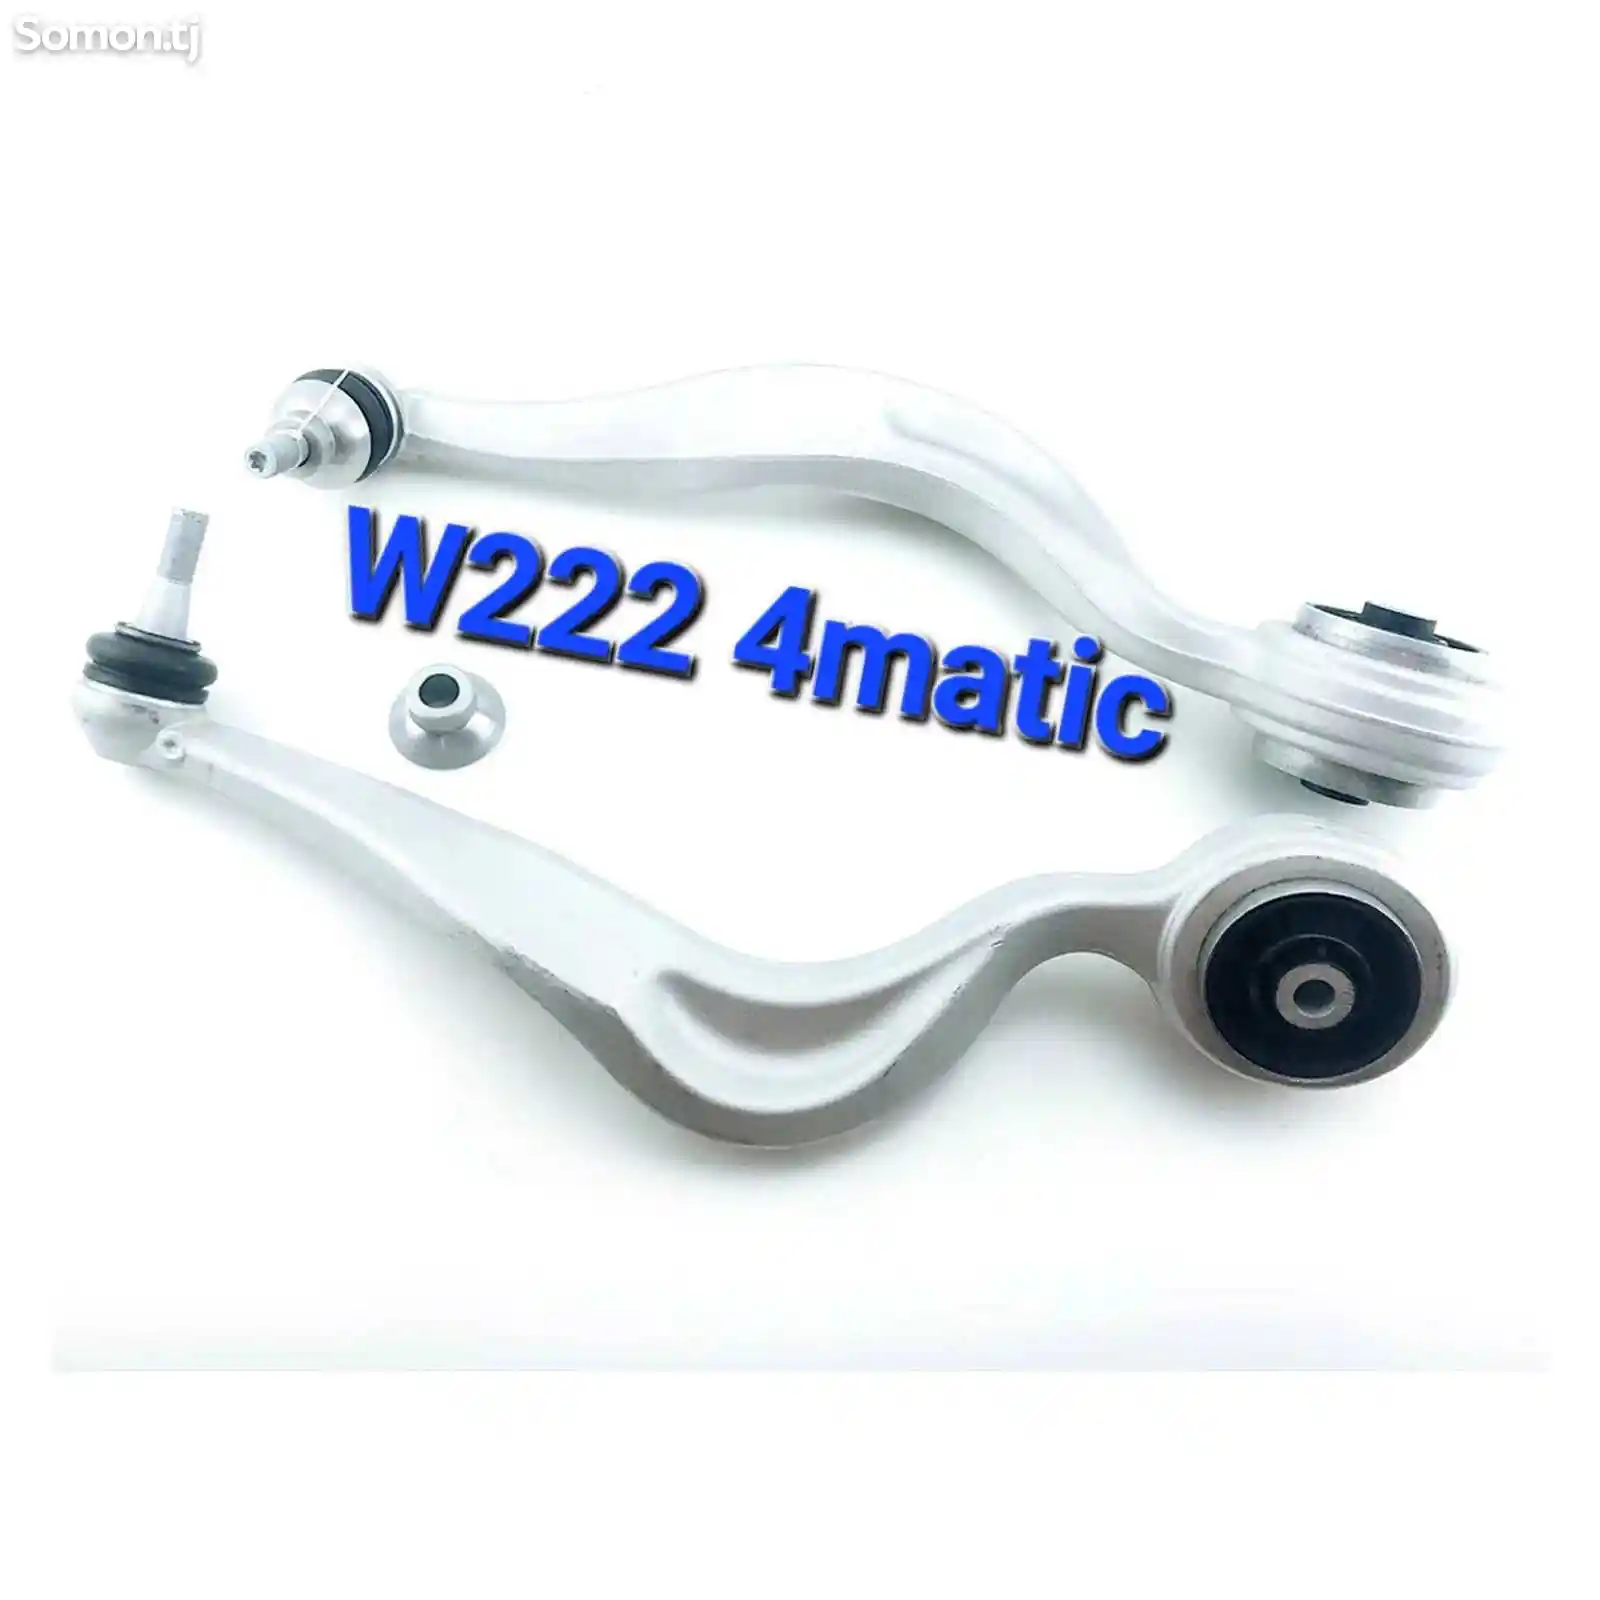 Передний нижний рычаг Mercedes-Benz W222 4 matic-1